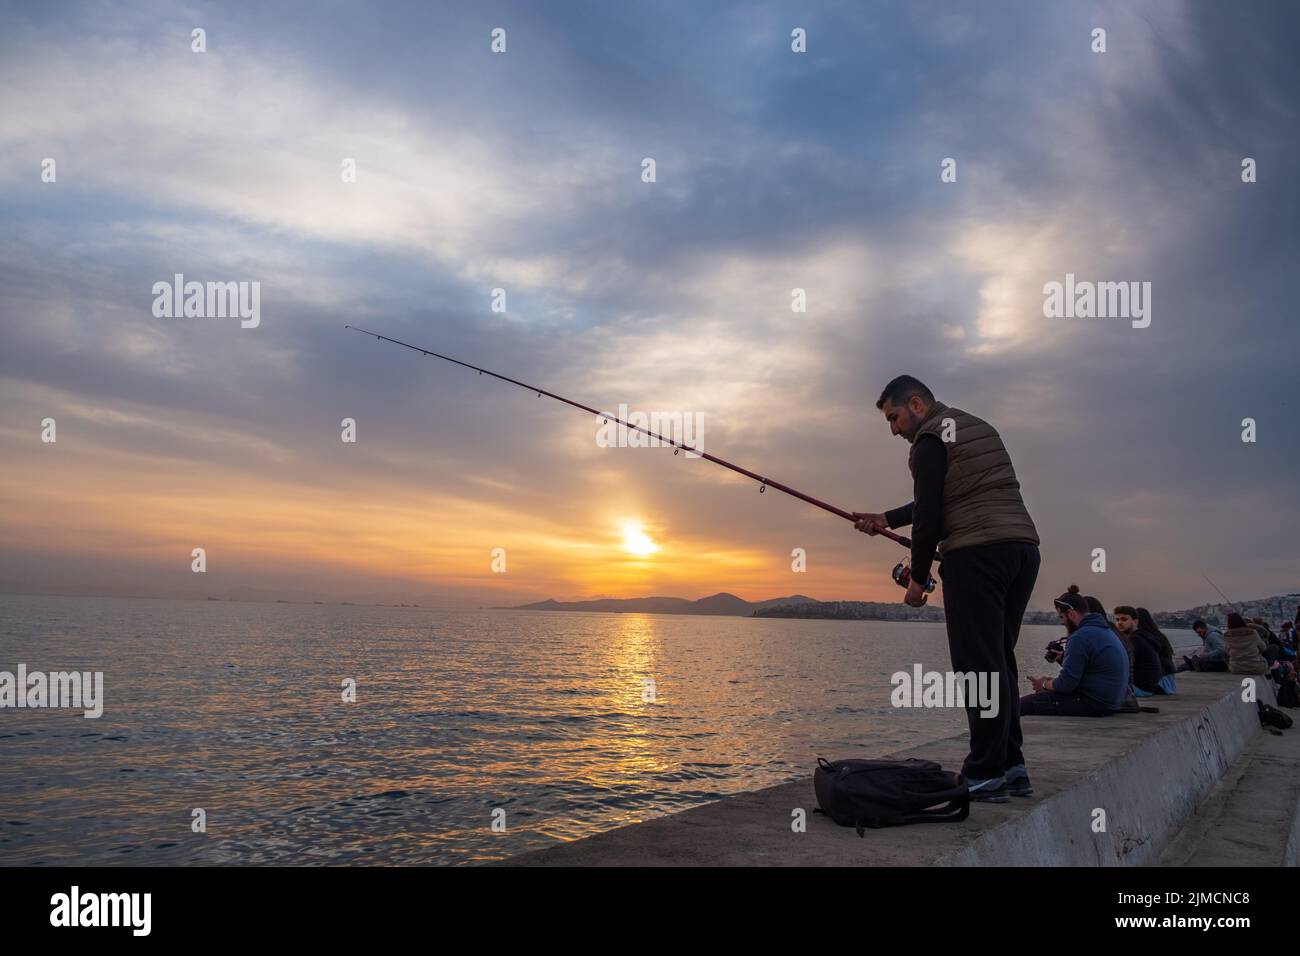 Wunderschöne Sonnenuntergangsszene eines Fischers und anderer Menschen, die sich an der Strandpromenade von Palaio Faliro in Athen, Griechenland, Vergnügen Stockfoto